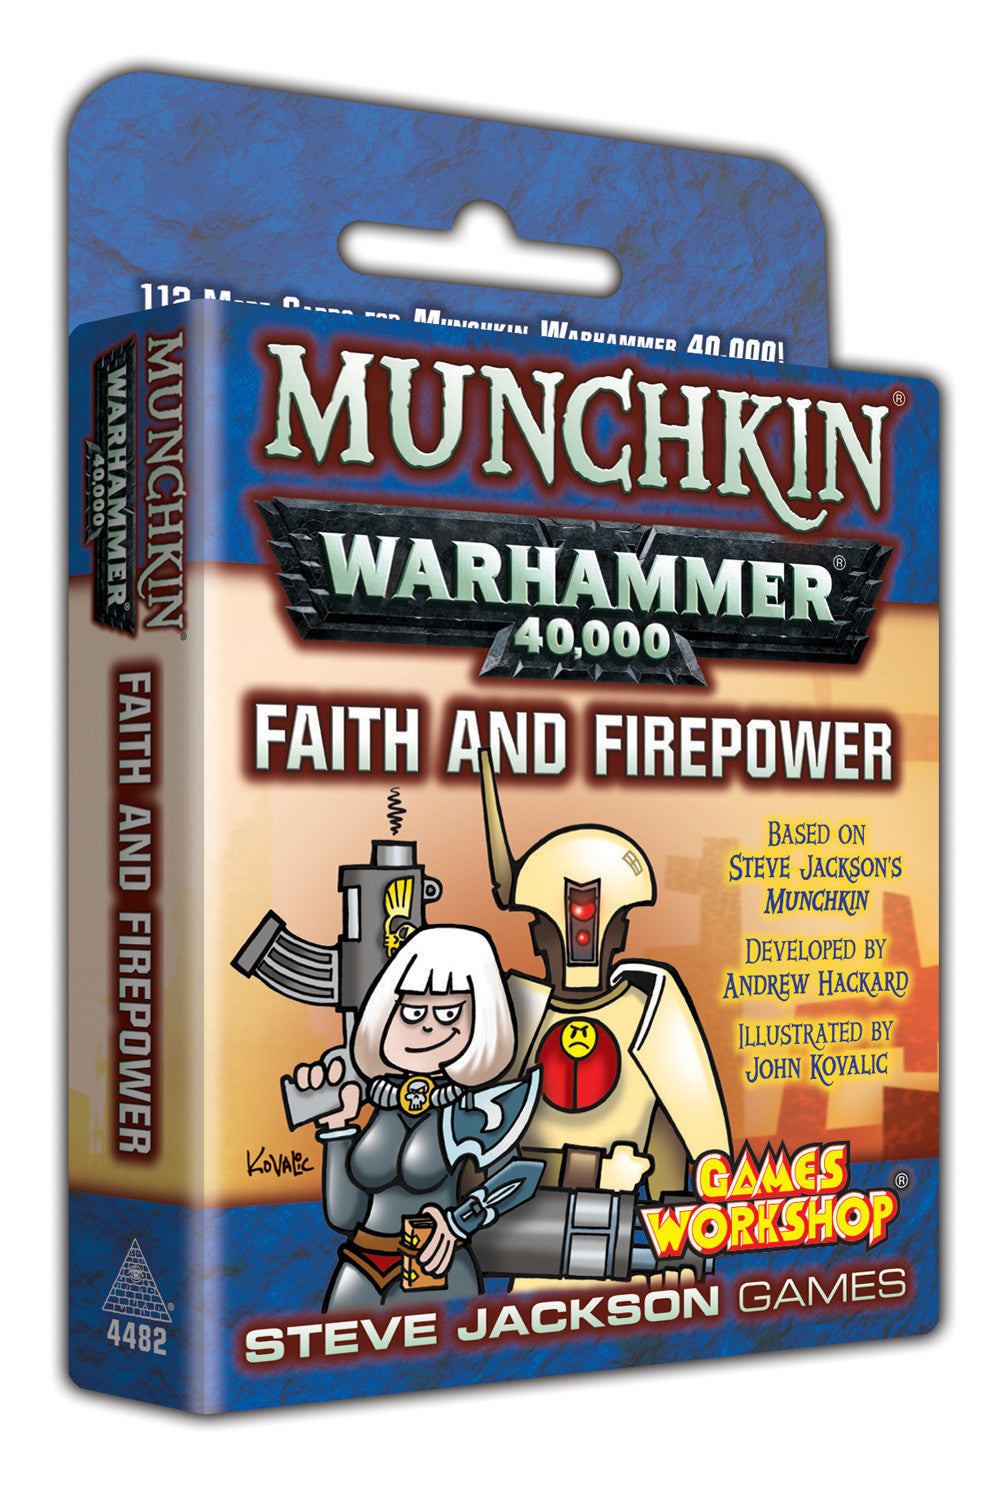 Munchkin Warhammer 40,000 Faith and Firepower